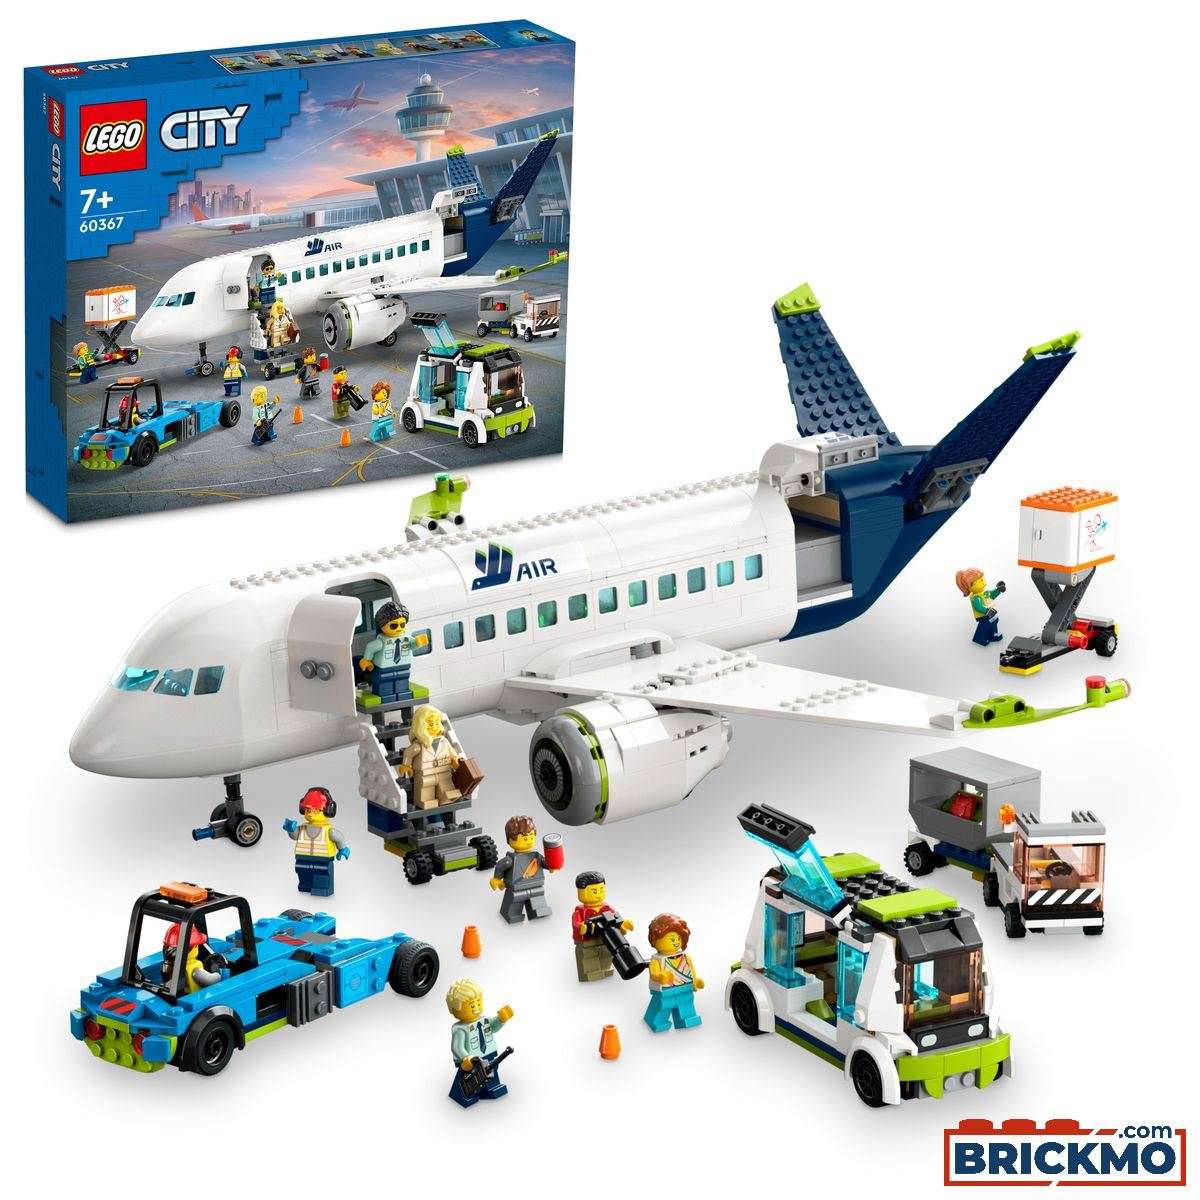 LEGO City 60367 Utasszállító repülőgép 60367